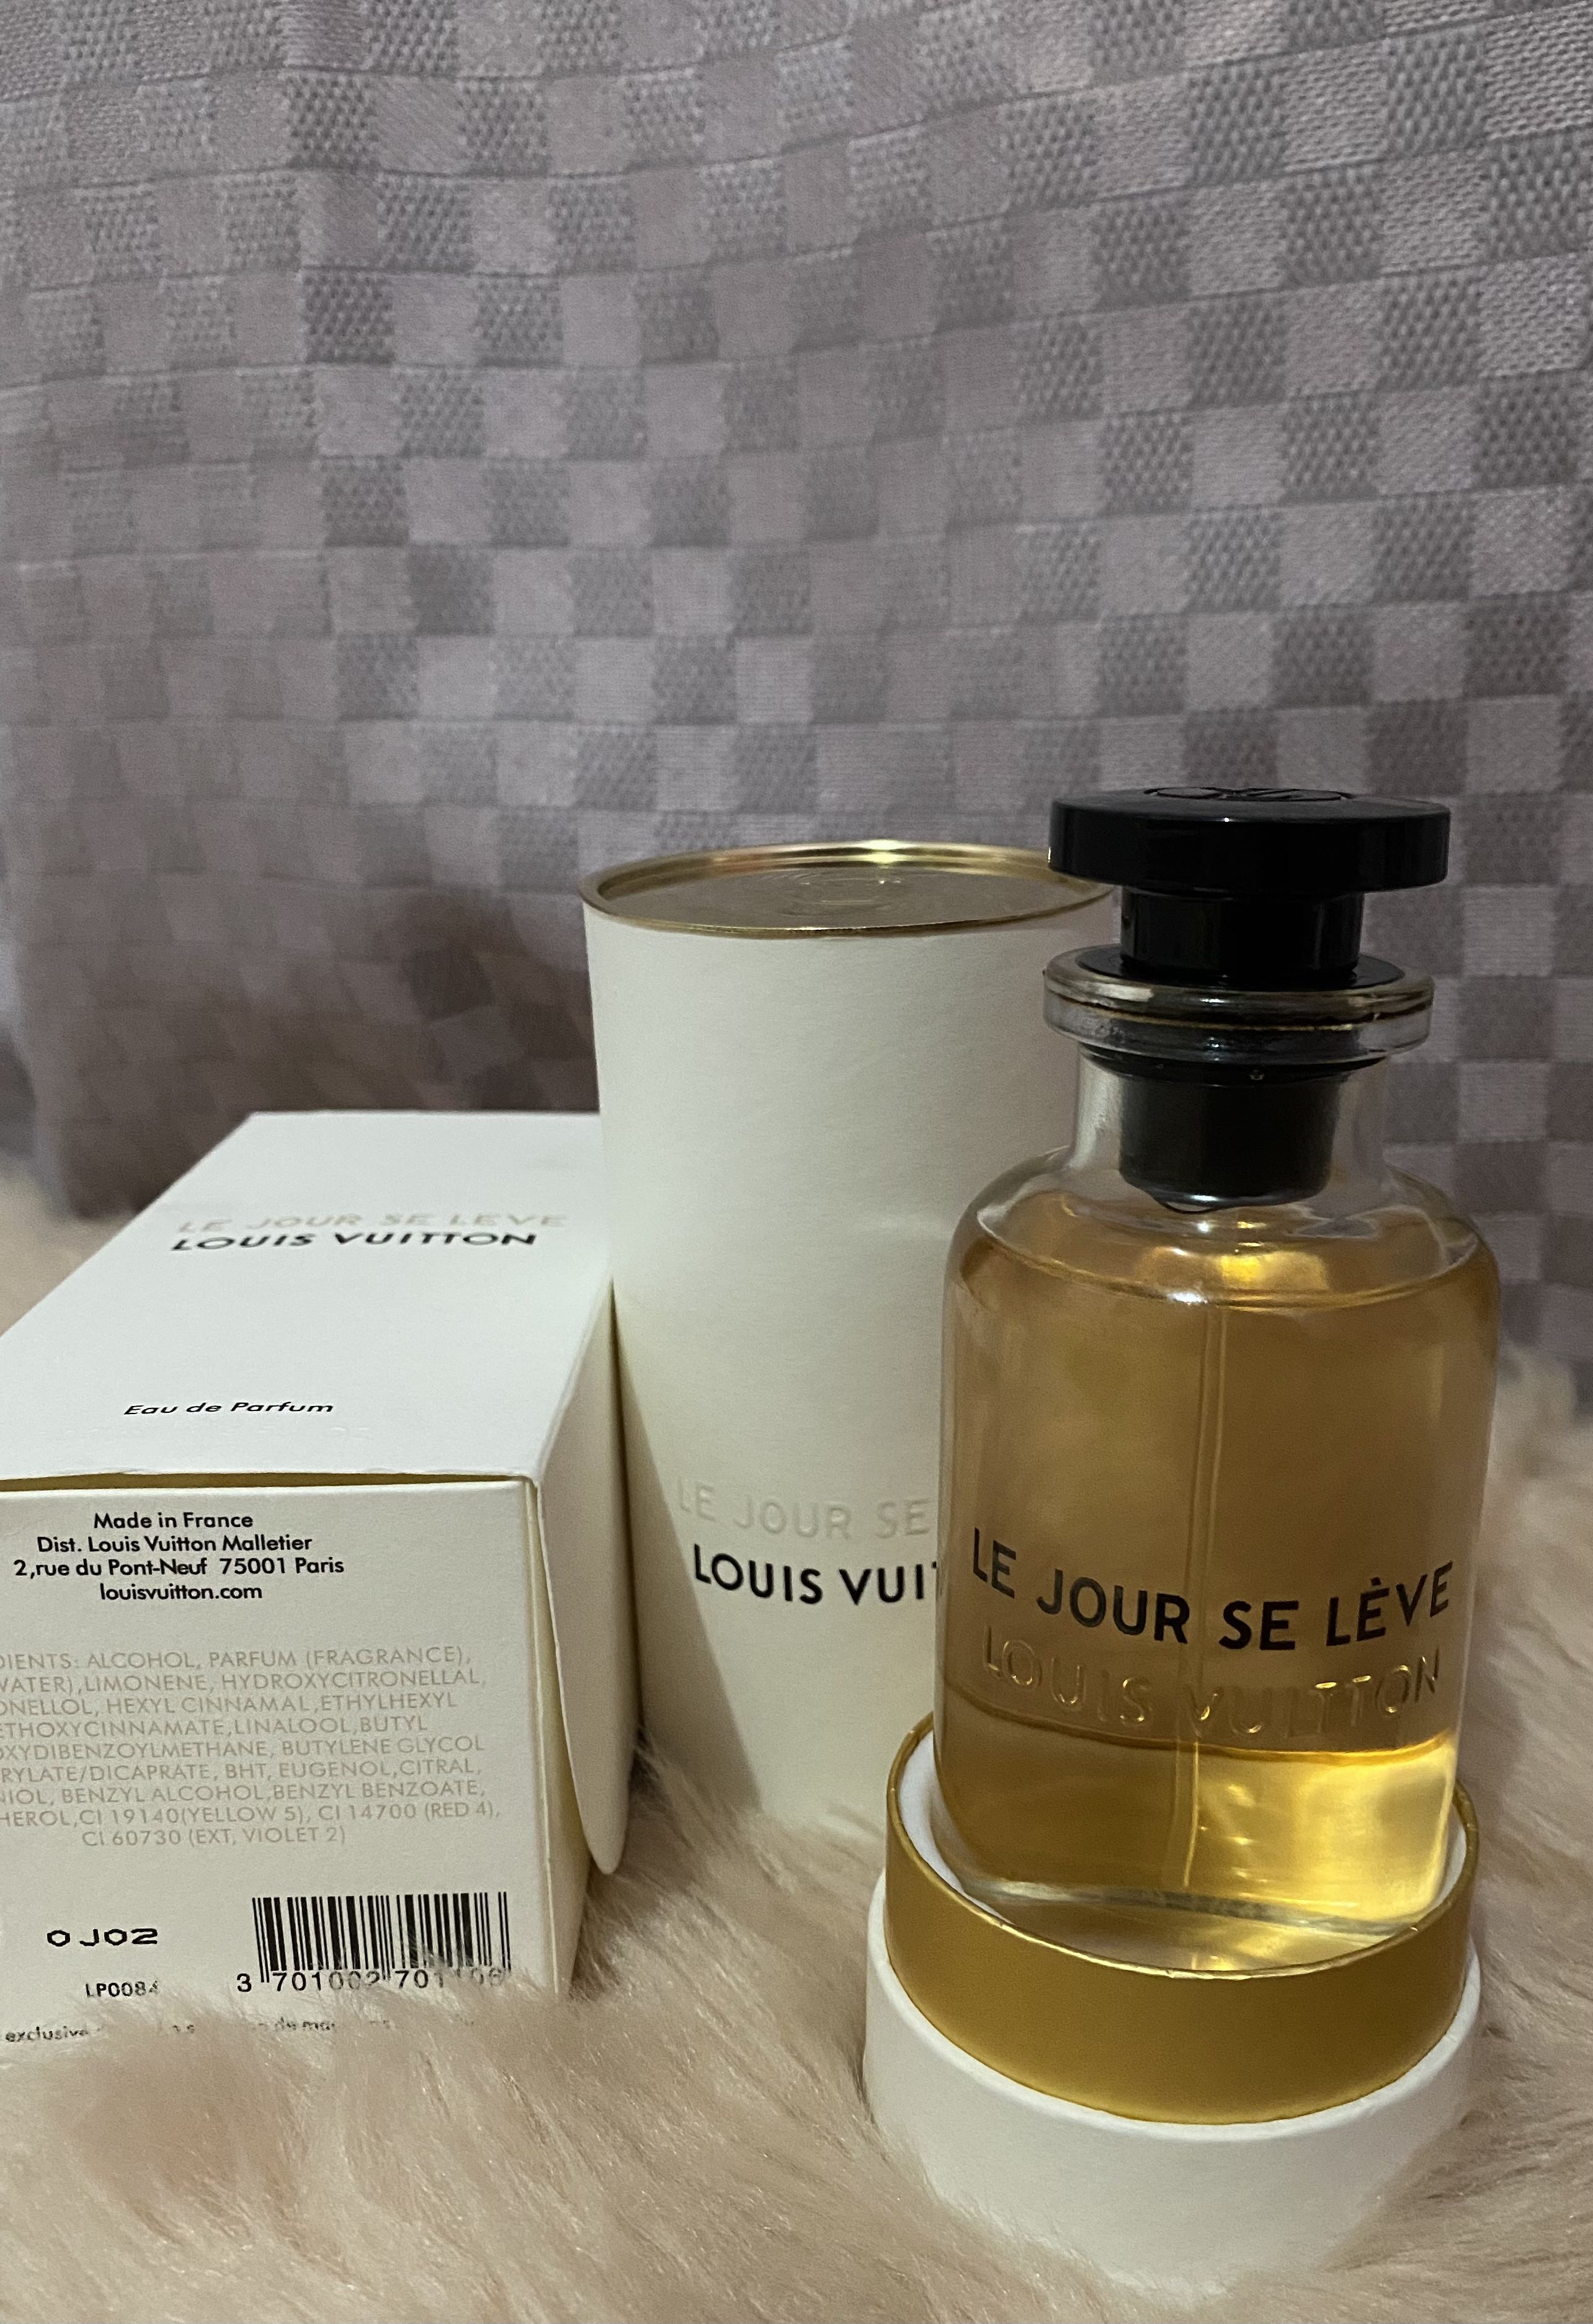 LV Le Jour Se lève Perfume - Make-up & Cosmetics - 114076876